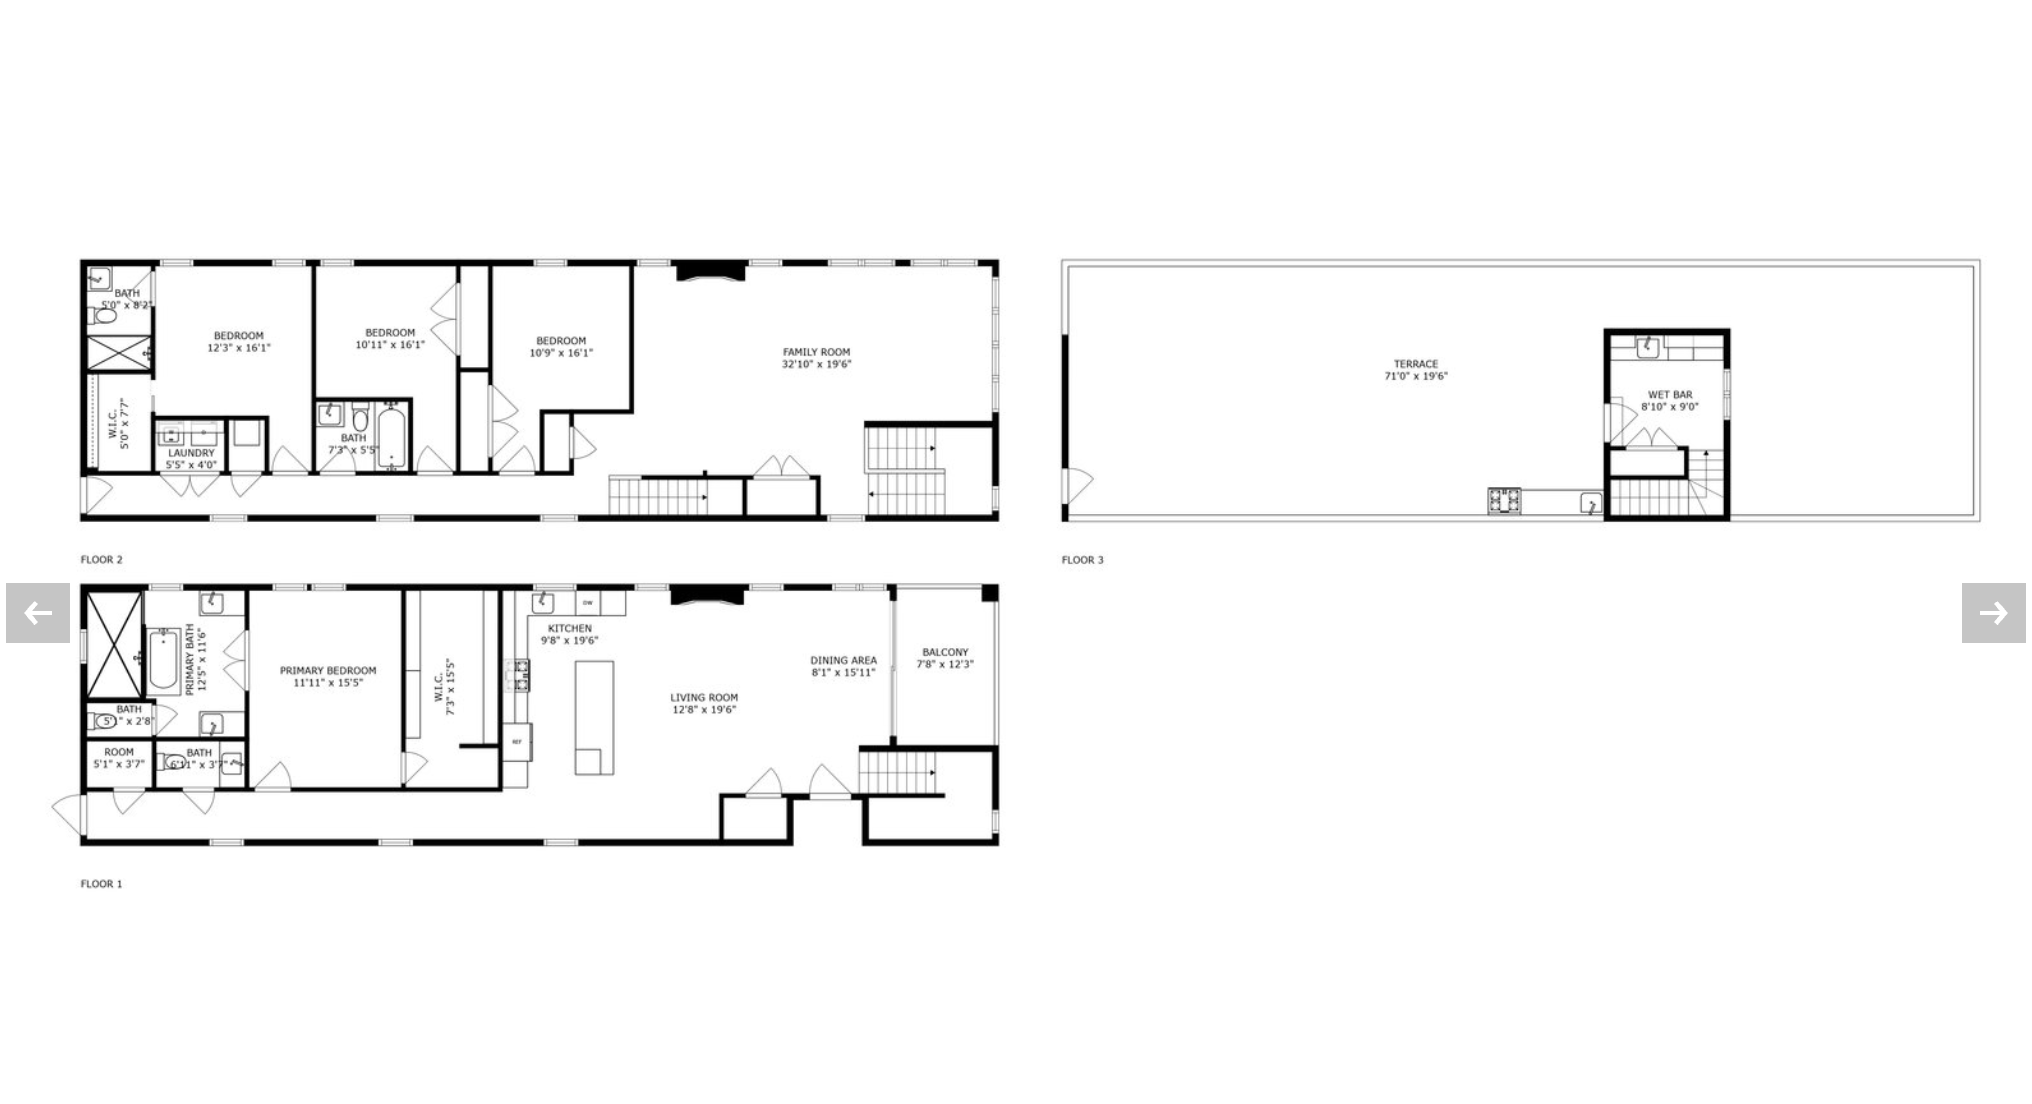 Penthouse duplex floor plans via Property People